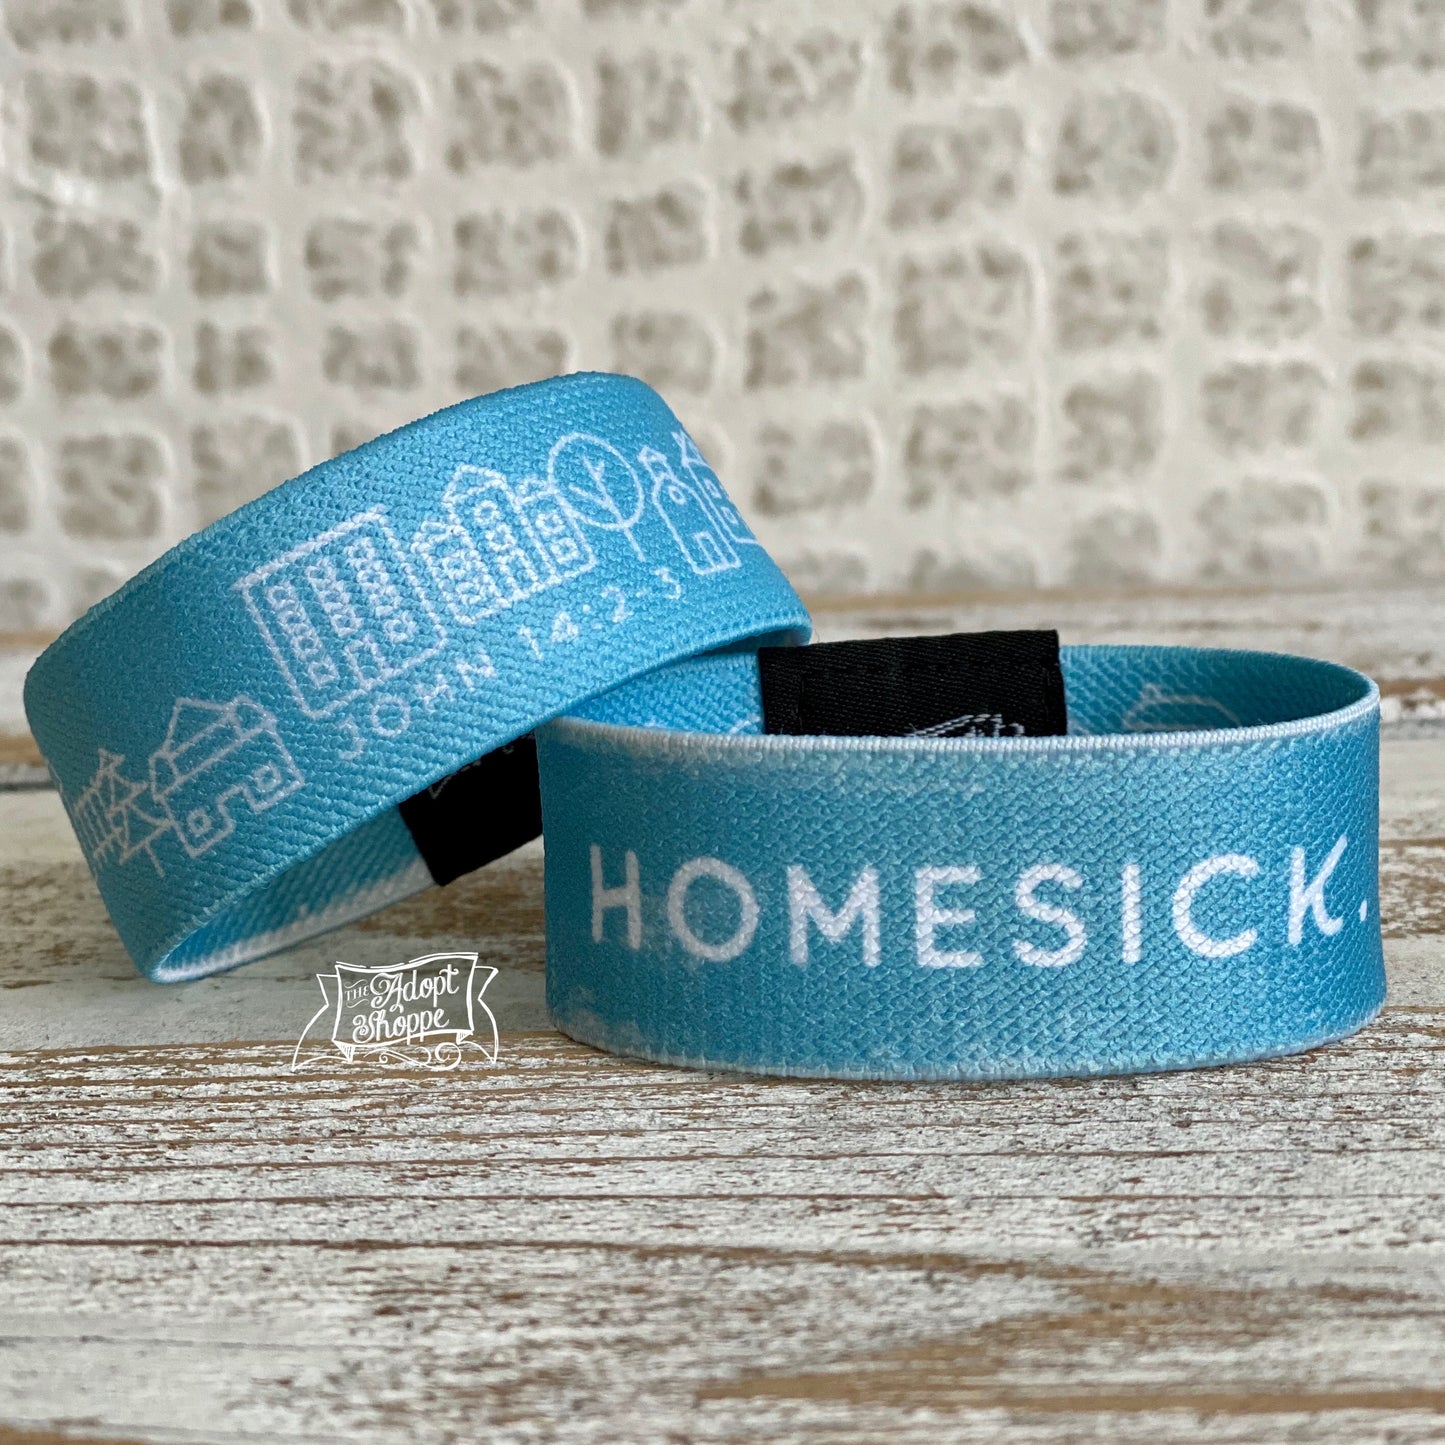 homesick for Heaven wristband bracelet